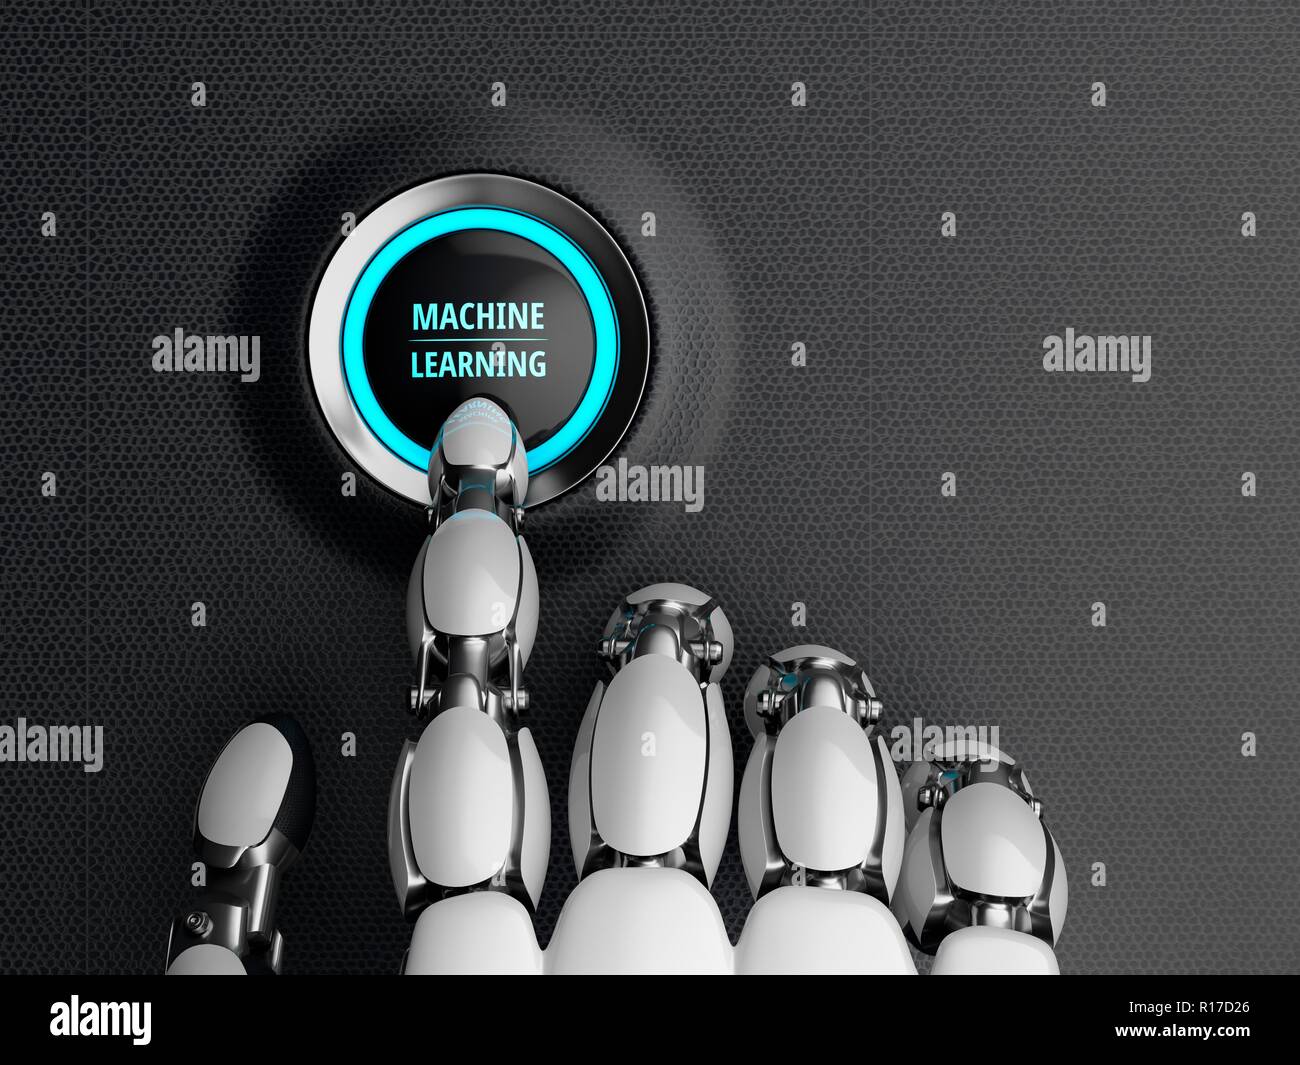 Main robotique, appuie sur le bouton de démarrage de la machine d'apprentissage. 3D illustration. Banque D'Images